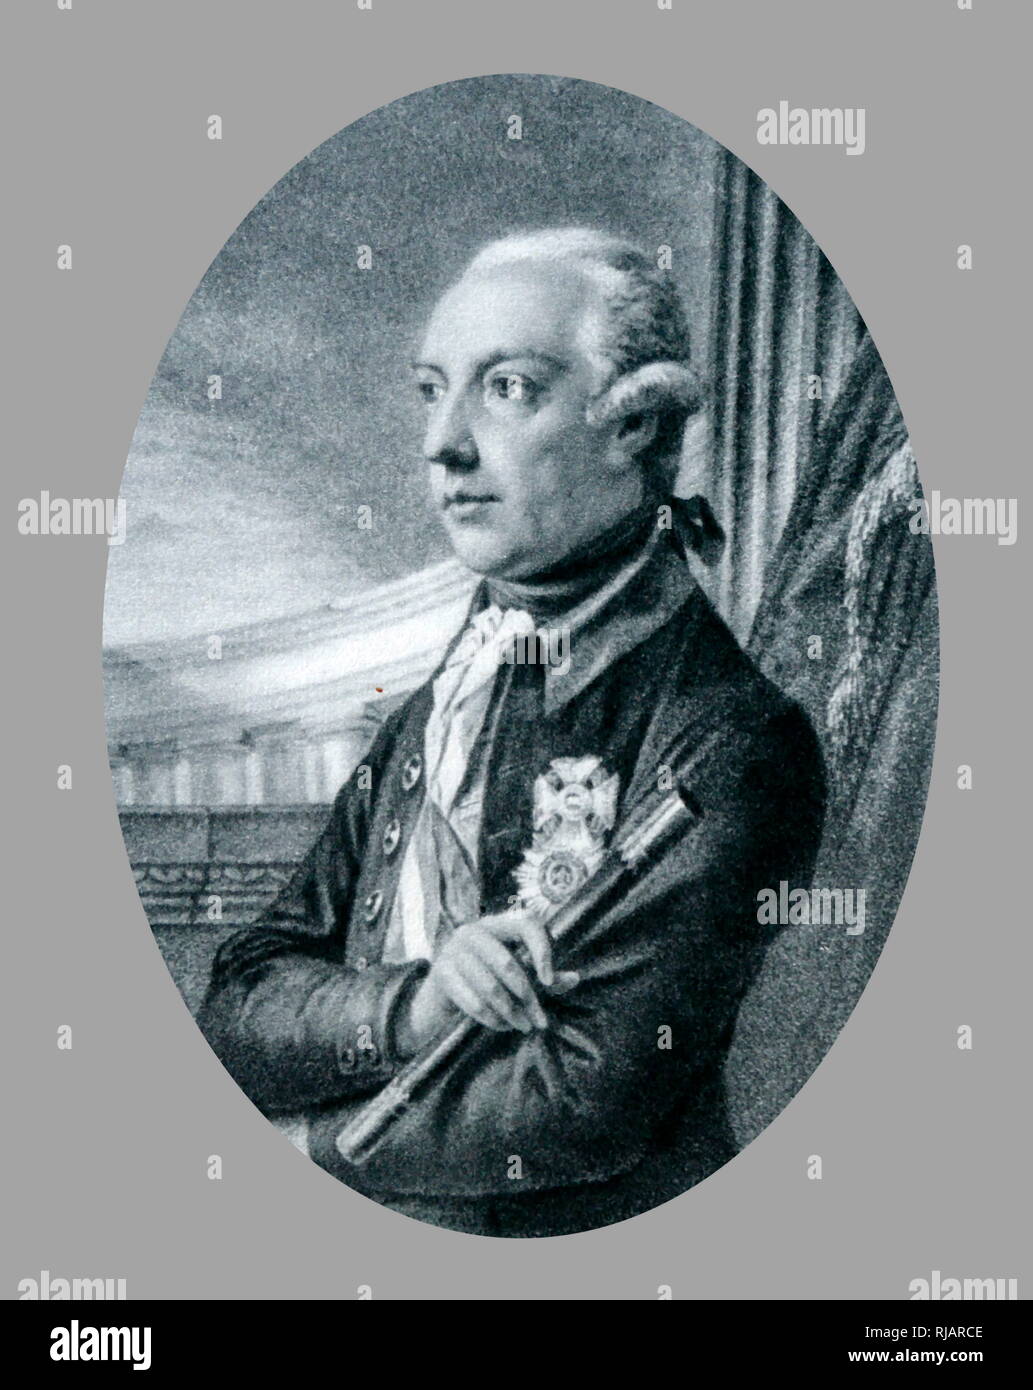 Ritratto di Fuger di Giuseppe II ( 1741 - 1790), imperatore austriaco, Imperatore del Sacro Romano Impero dal 1765 al 1790 e dominatore delle terre di Habsburg dal 1780 al 1790 Foto Stock